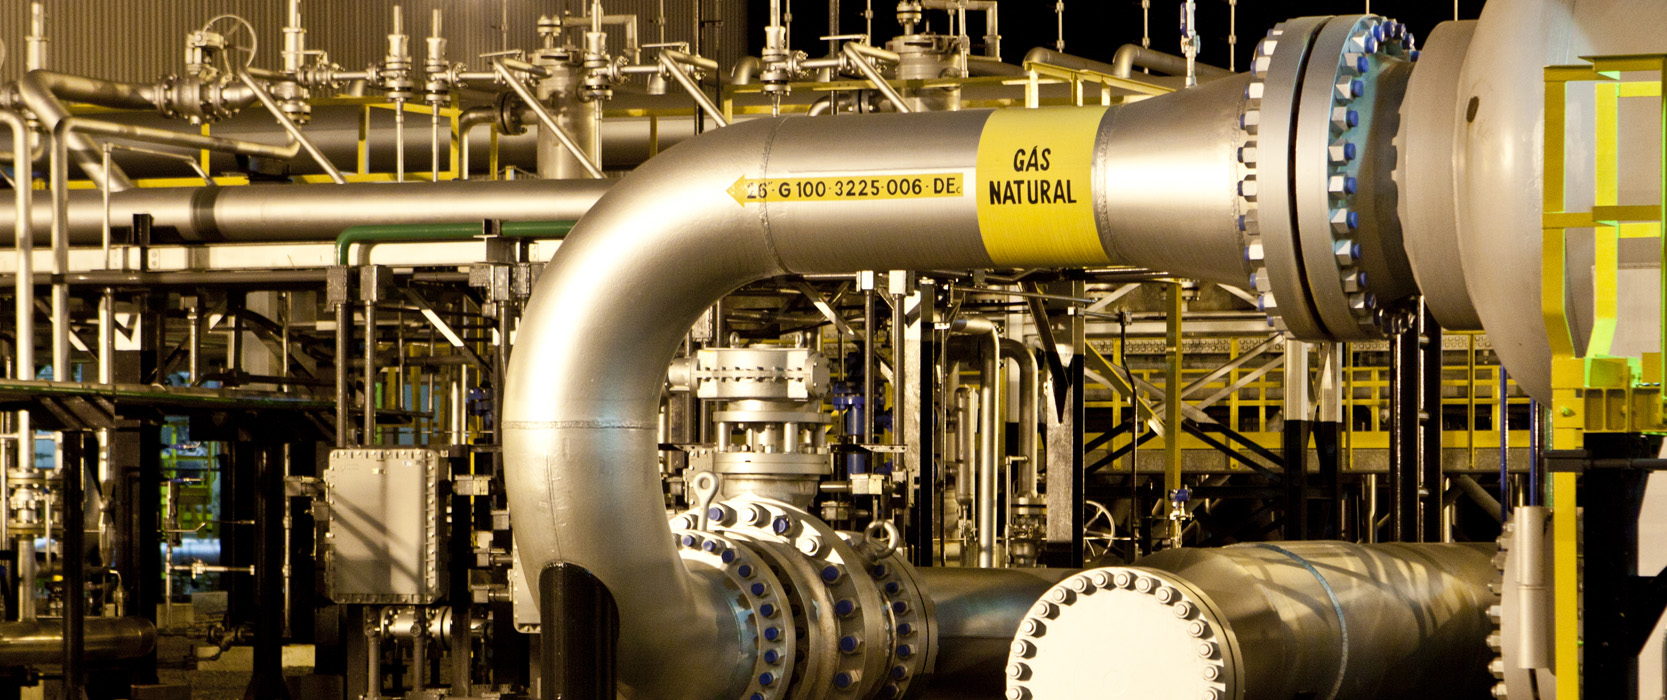 Petrobras, Galp, MGás, MSGás e Sulgás contratam capacidade de transporte de gás natural do Gasbol para 2024-2028. Na imagem: Instalações e rede de dutos metálicos, na cor dourada, do Gasbol – Gasoduto Bolívia-Brasil (Foto: Divulgação TBG)